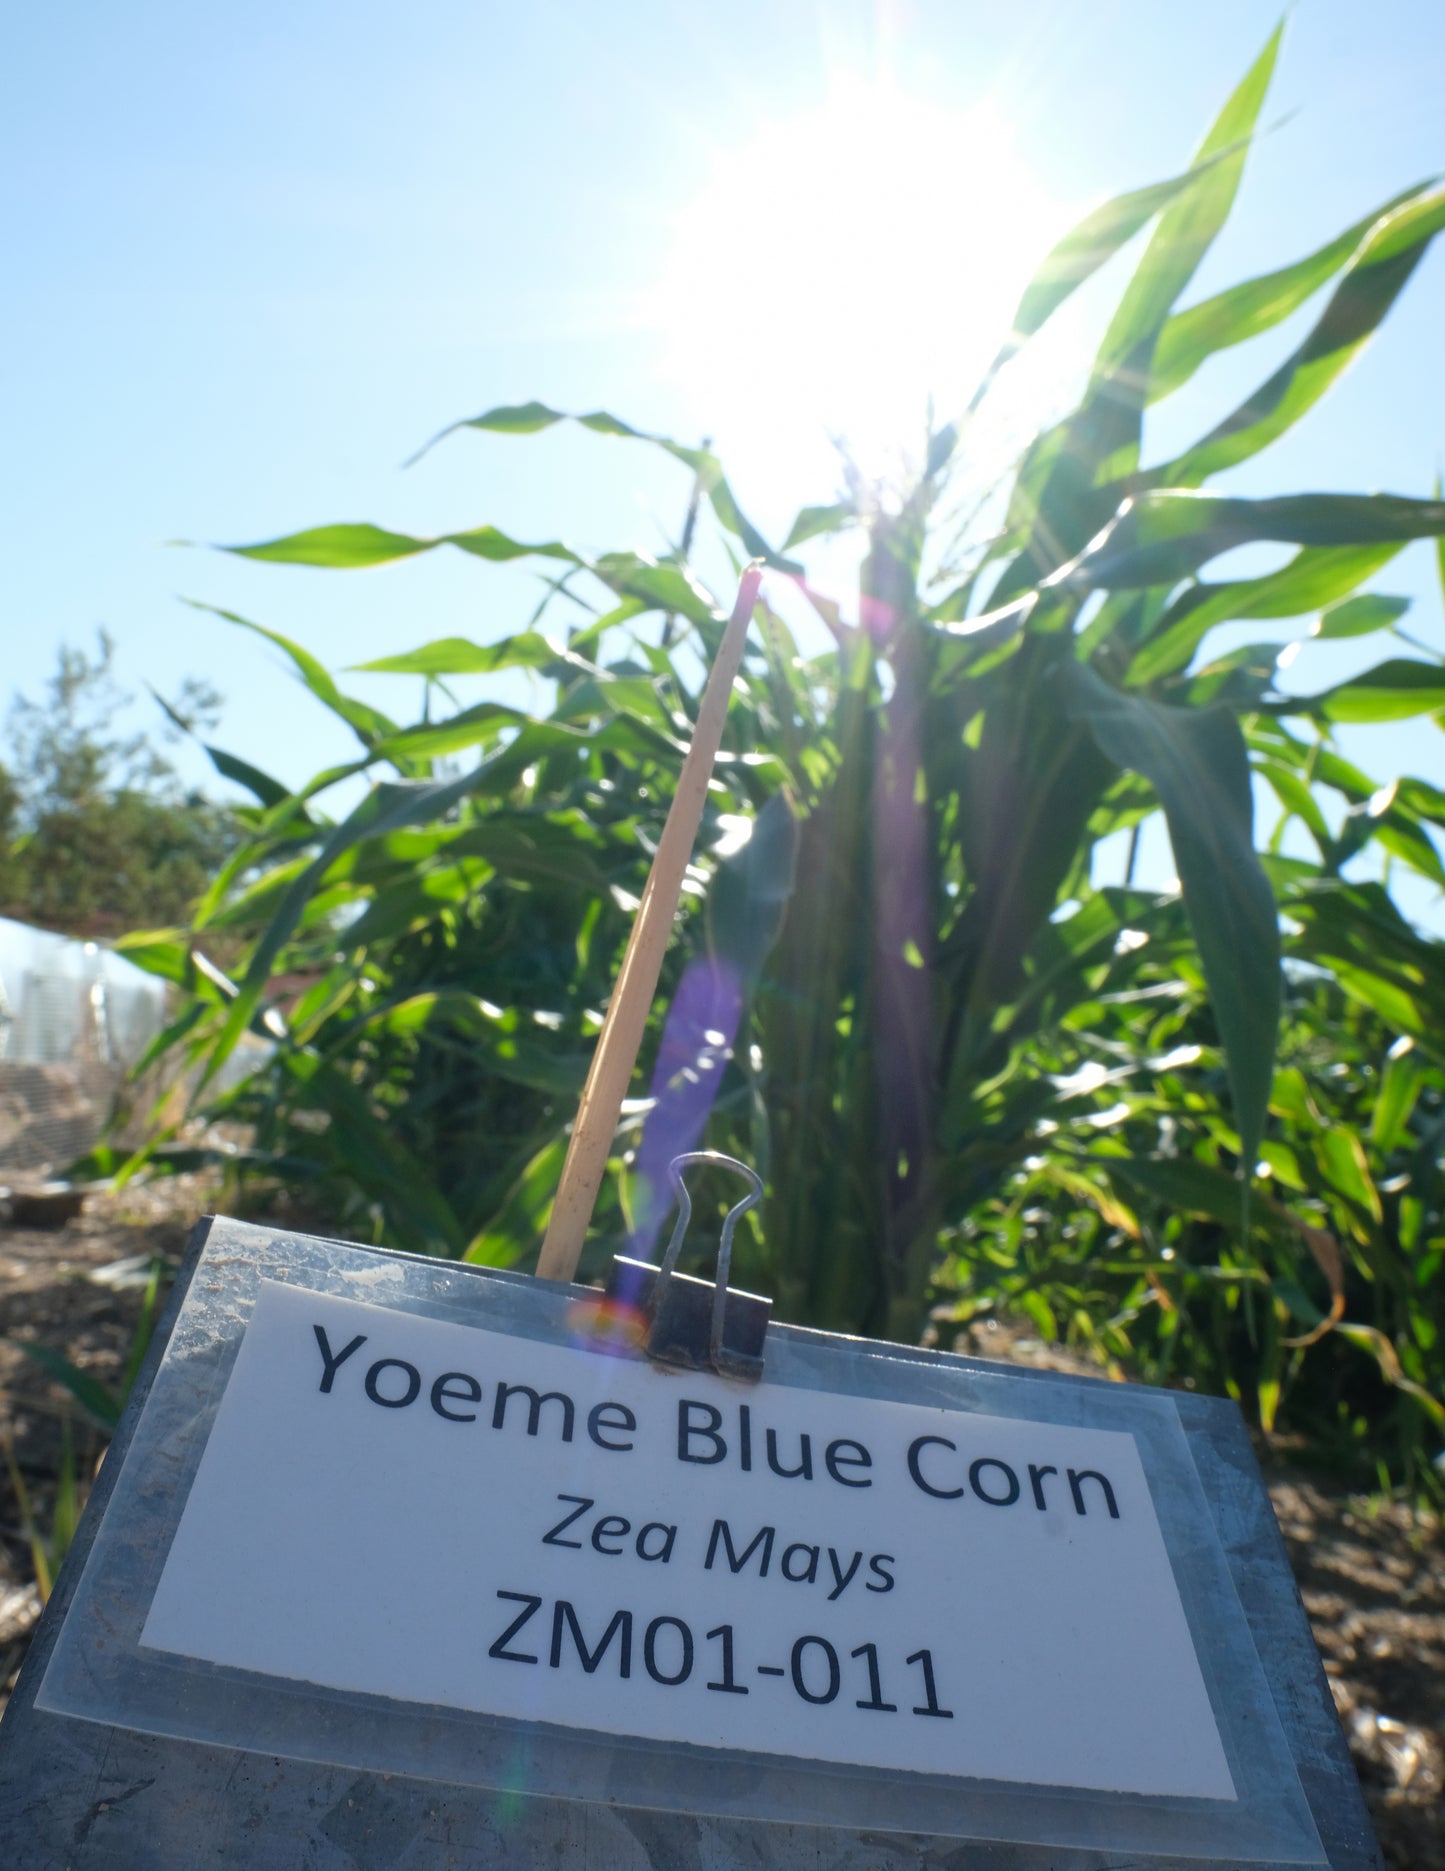 Adopt-A-Crop Update: Yoeme Blue Corn